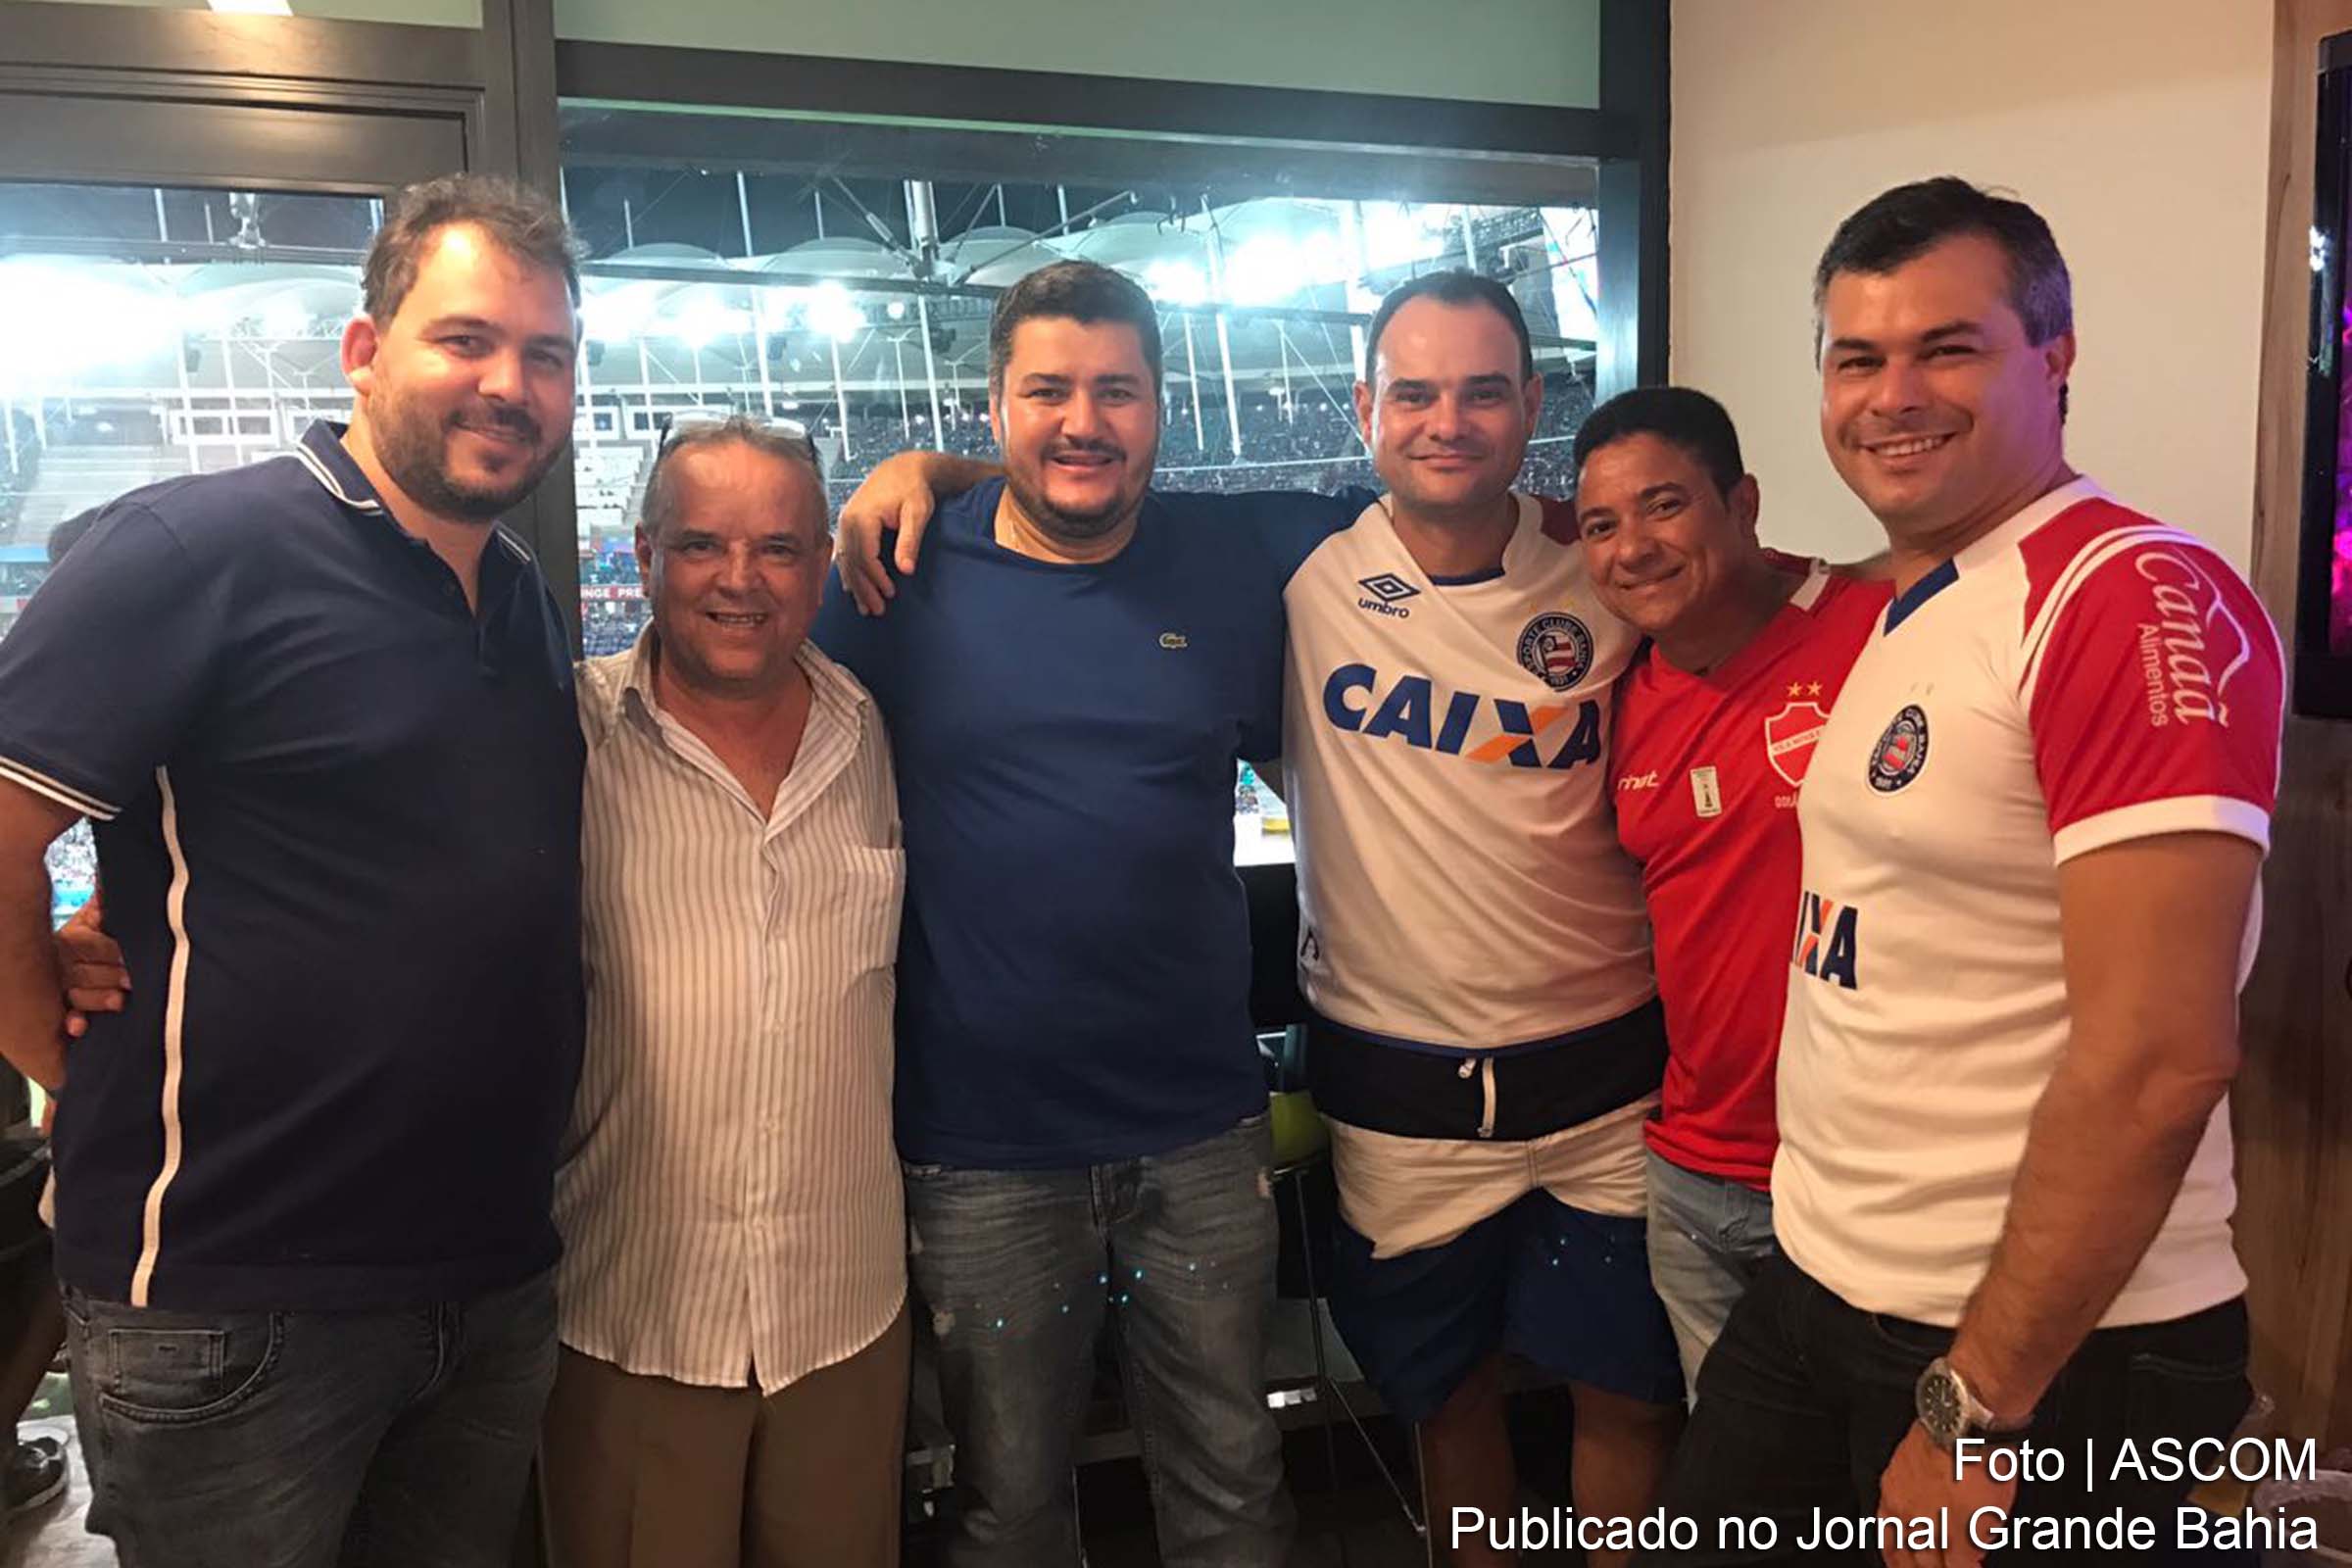 Vereador Reinaldo Miranda (Ronny) comemora, ao lado de amigos, vitória do Bahia.